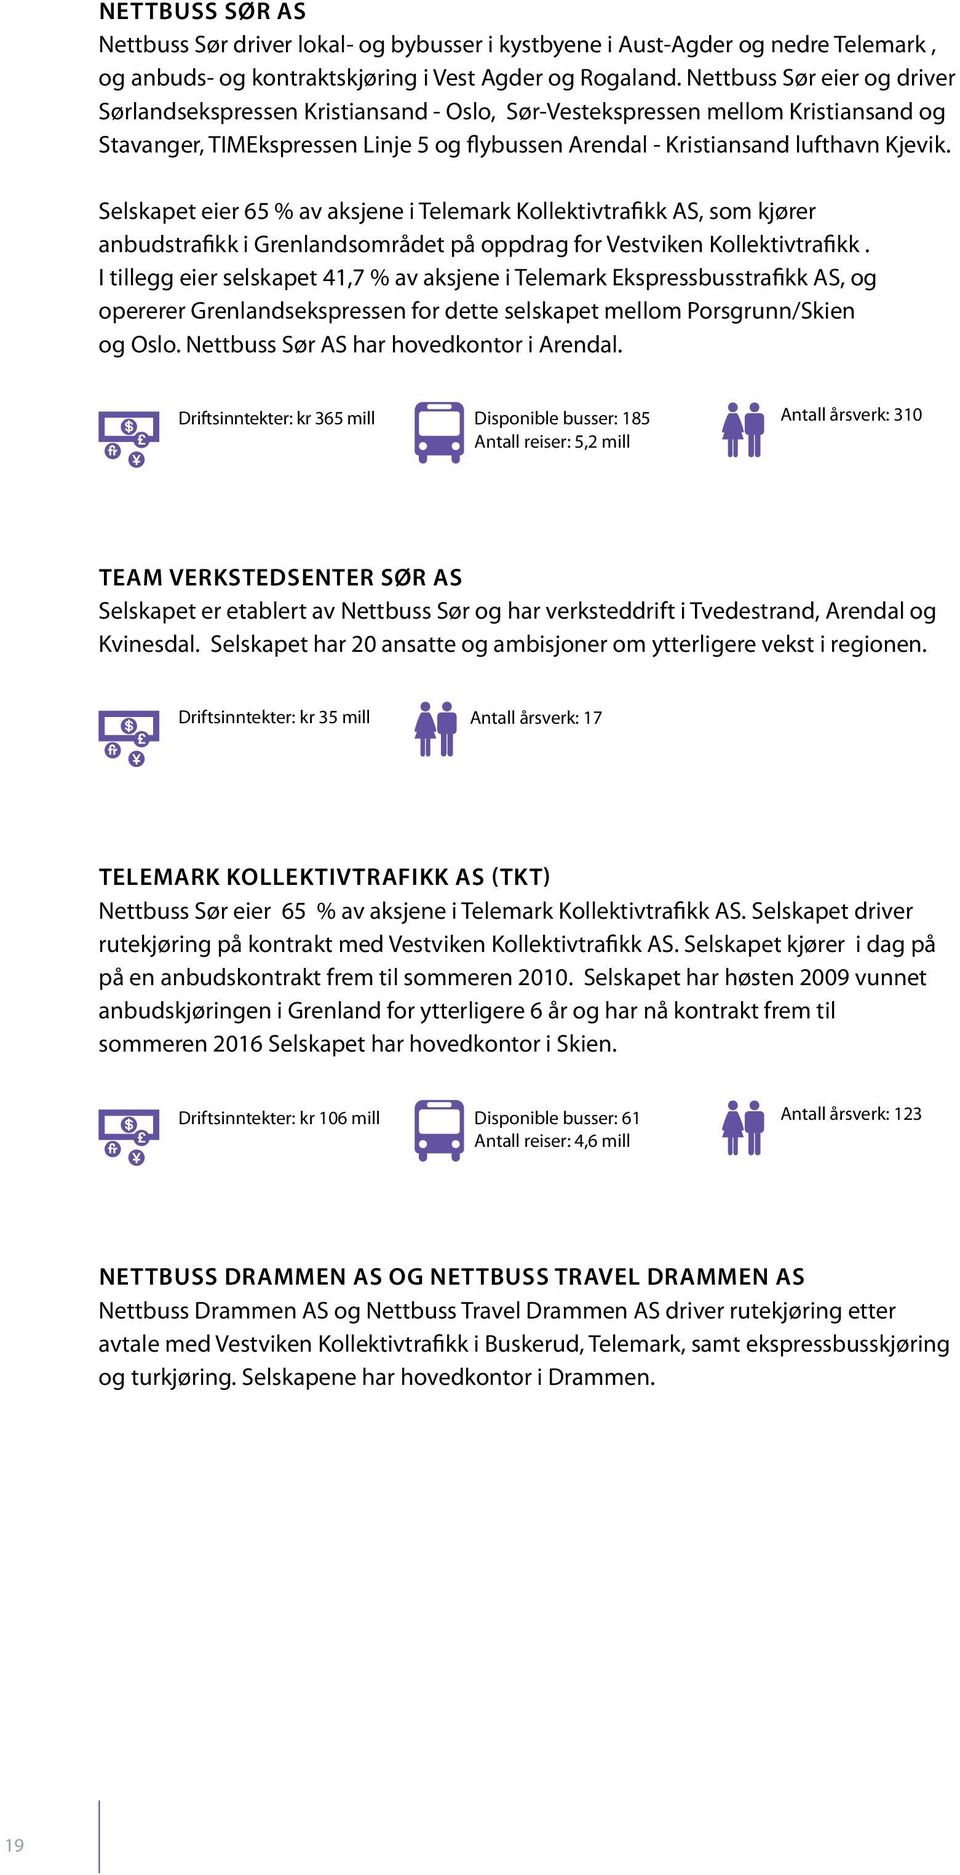 Selskapet eier 65 % av aksjene i Telemark Kollektivtrafikk AS, som kjører anbudstrafikk i Grenlandsområdet på oppdrag for Vestviken Kollektivtrafikk.